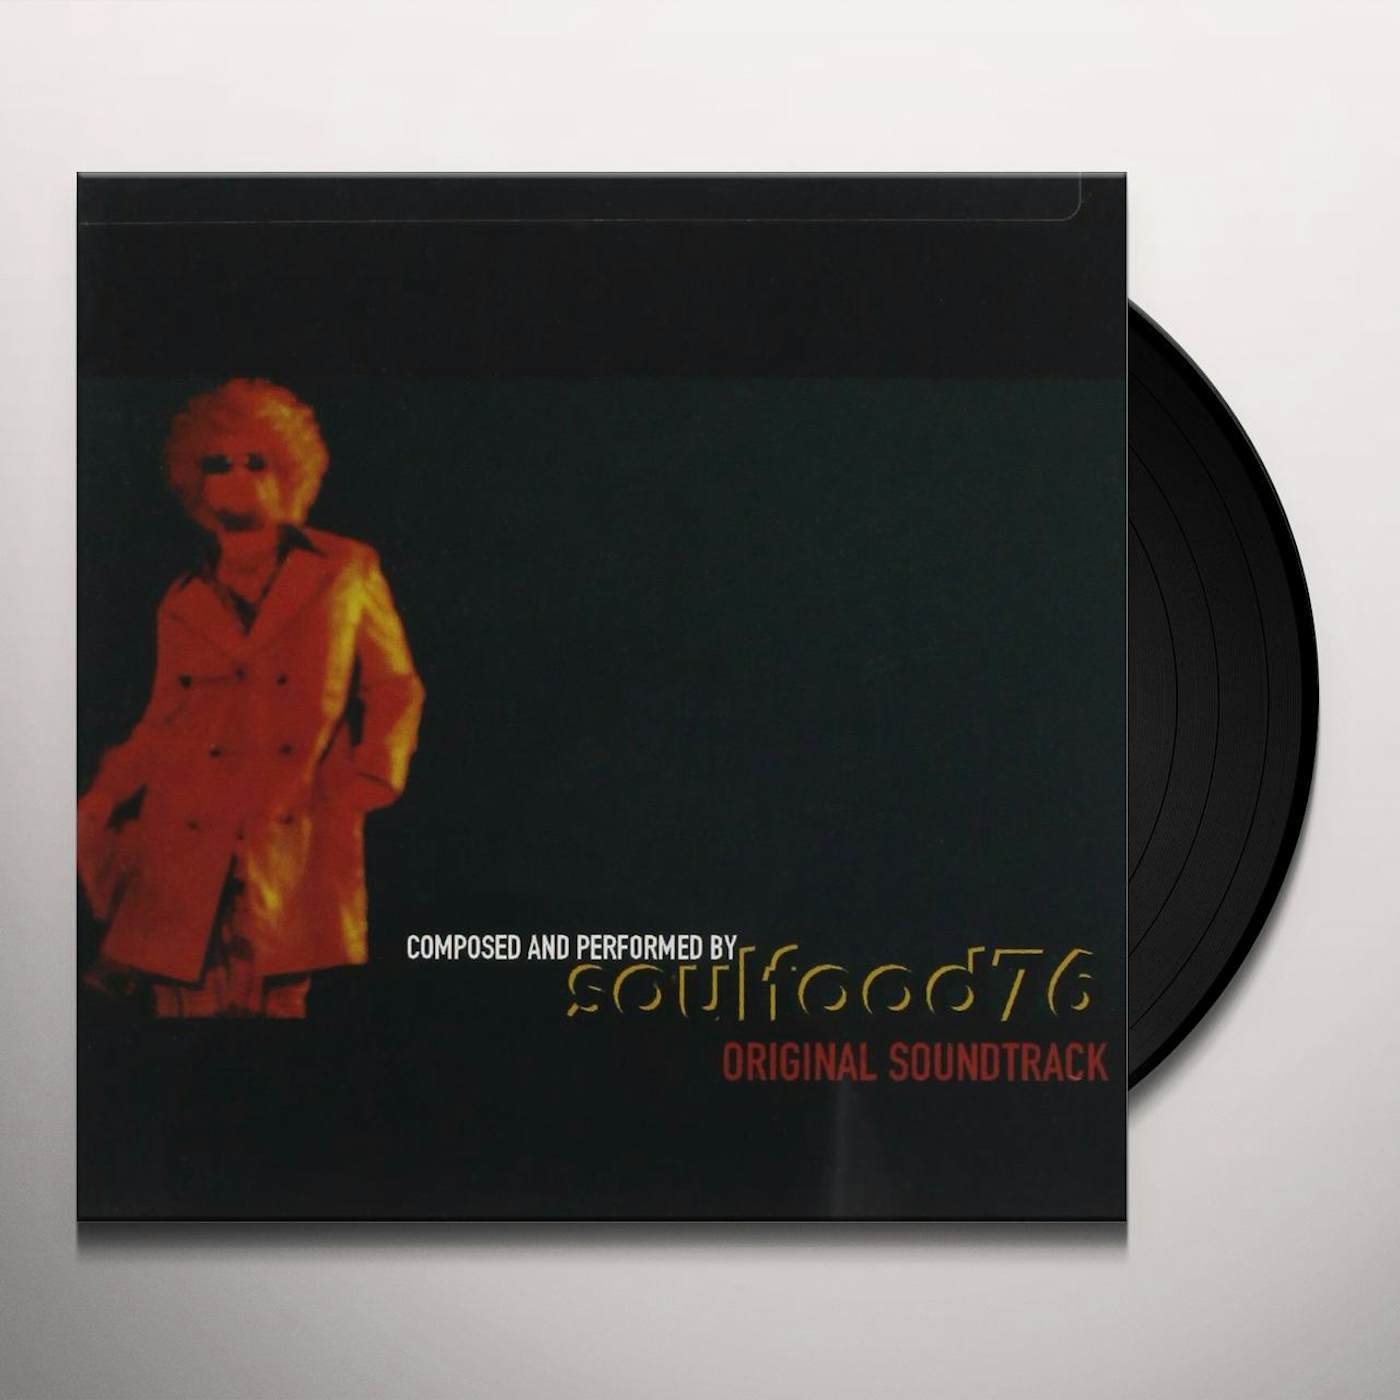 Soulfood 76 Original Soundtrack Vinyl Record